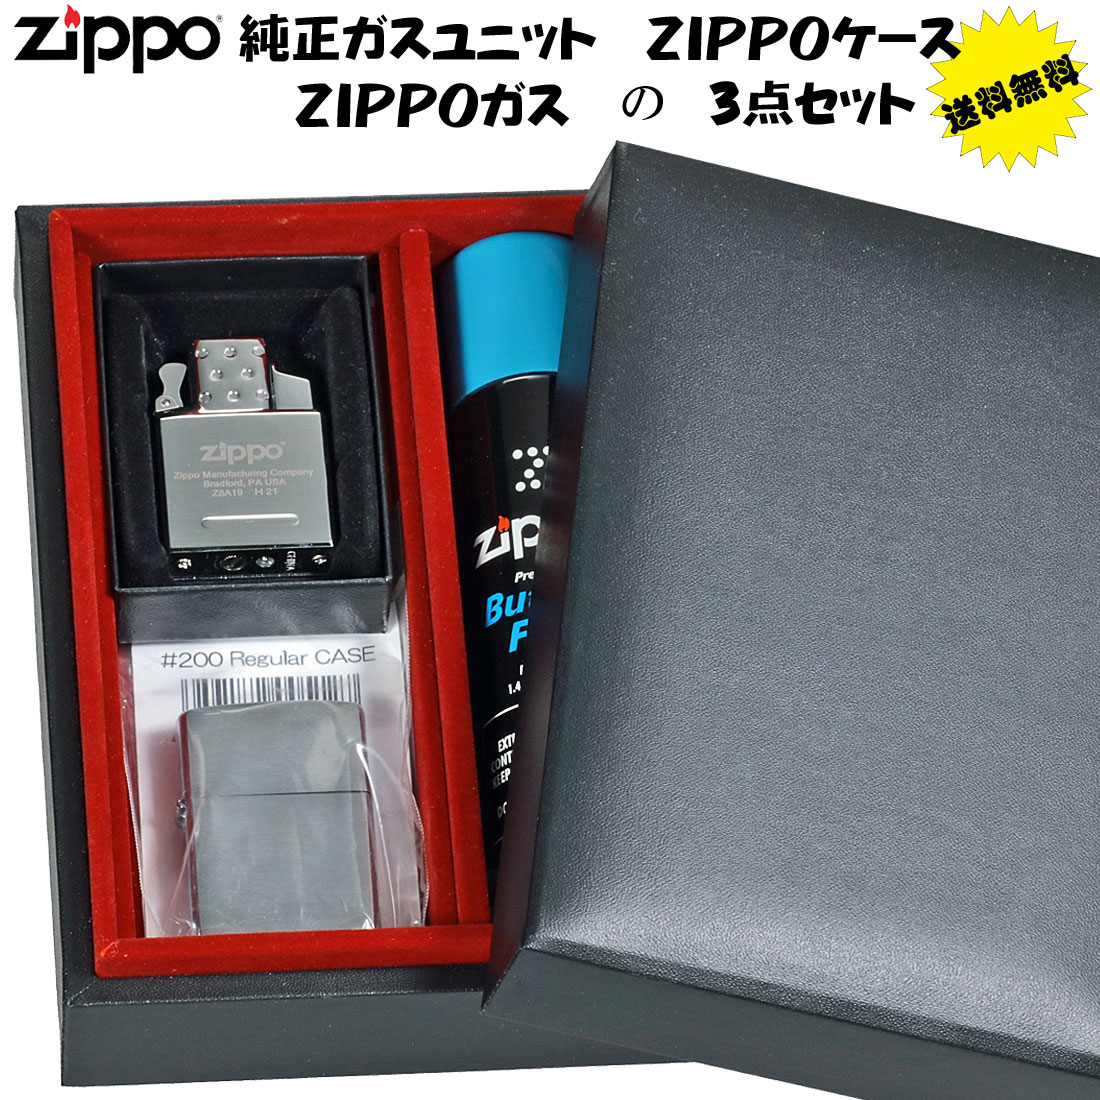 (完売しました)zippo 純正品 ガスライターユニット（シングルトーチ）#65839&ジッポー#200ケース&専用ガス小缶　豪華ギフトBOXセット  送料無料